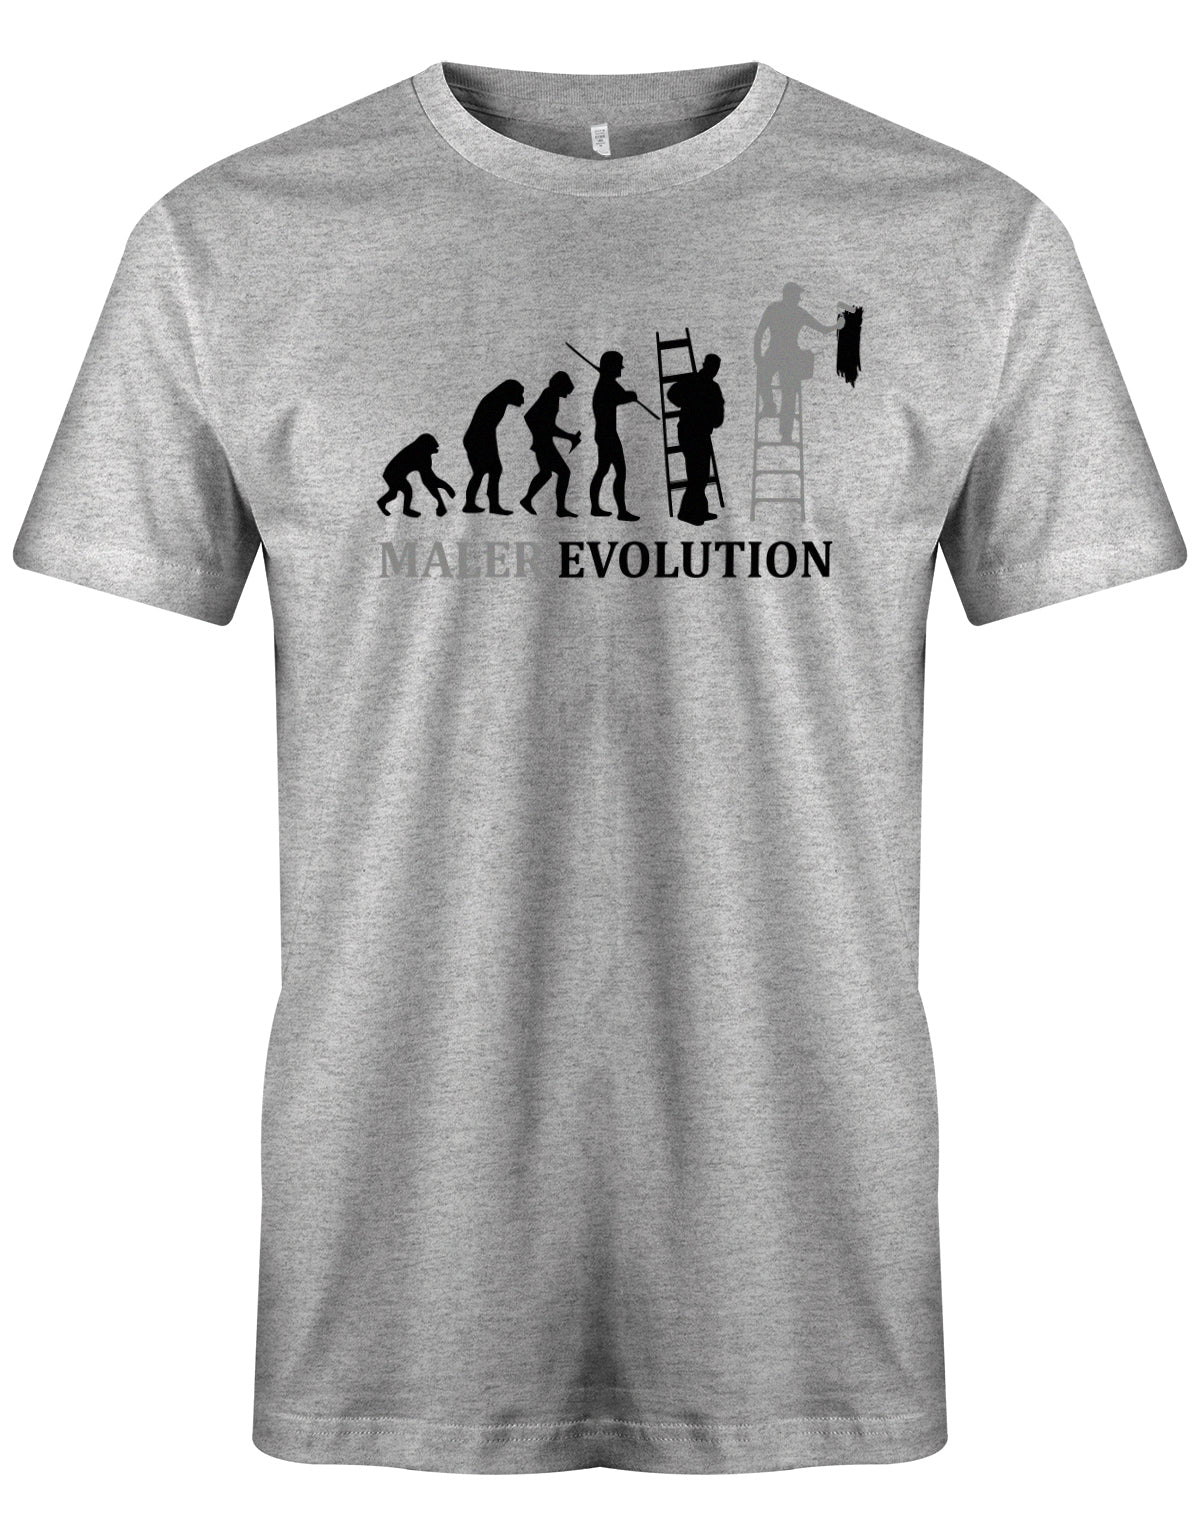 Maler und Lackierer Shirt - Maler Evolution grau